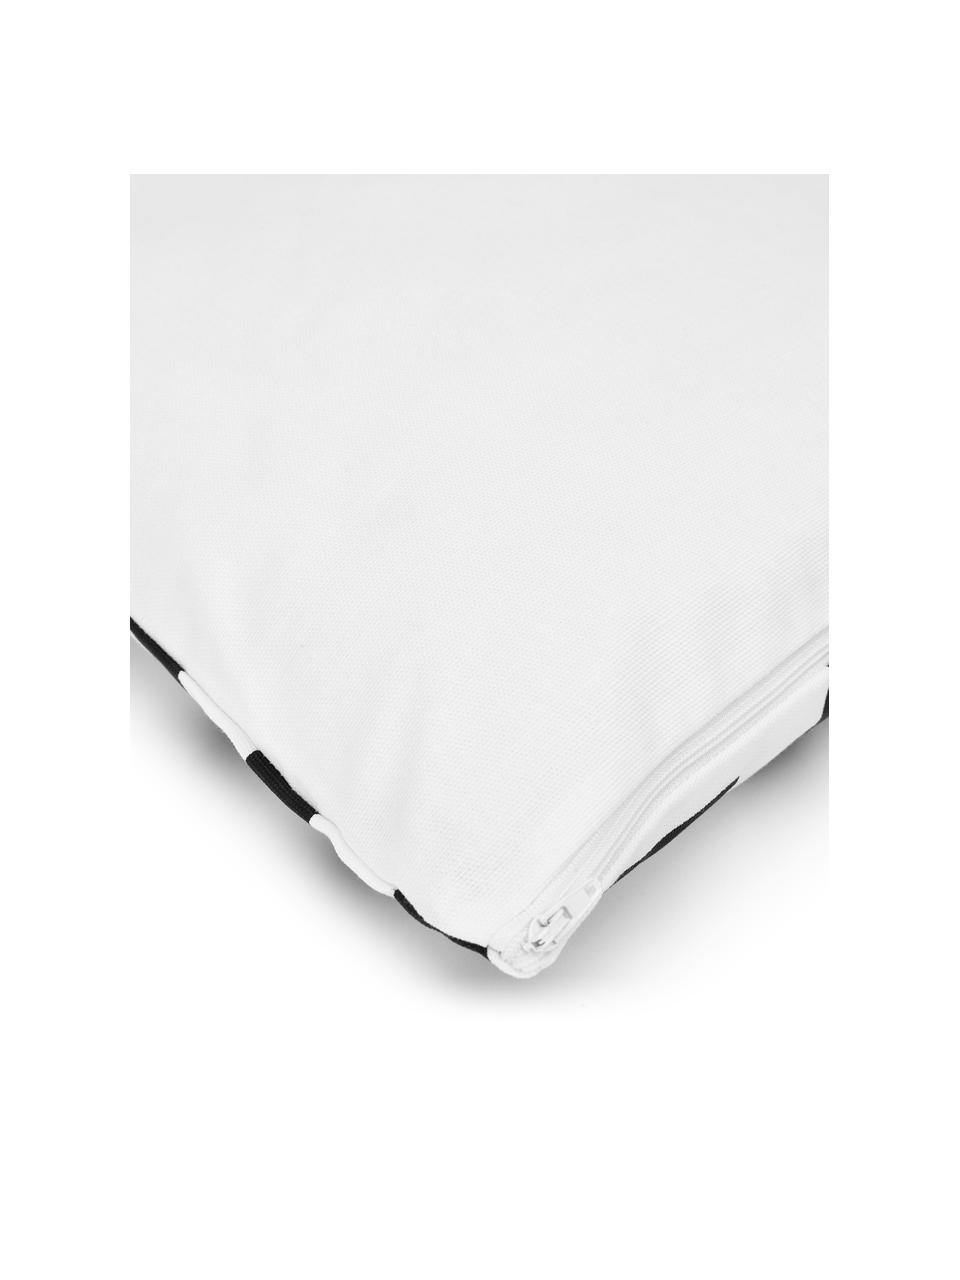 Federa arredo in cotone con motivo grafico Bram, 100% cotone, Bianco, nero, Larg. 45 x Lung. 45 cm